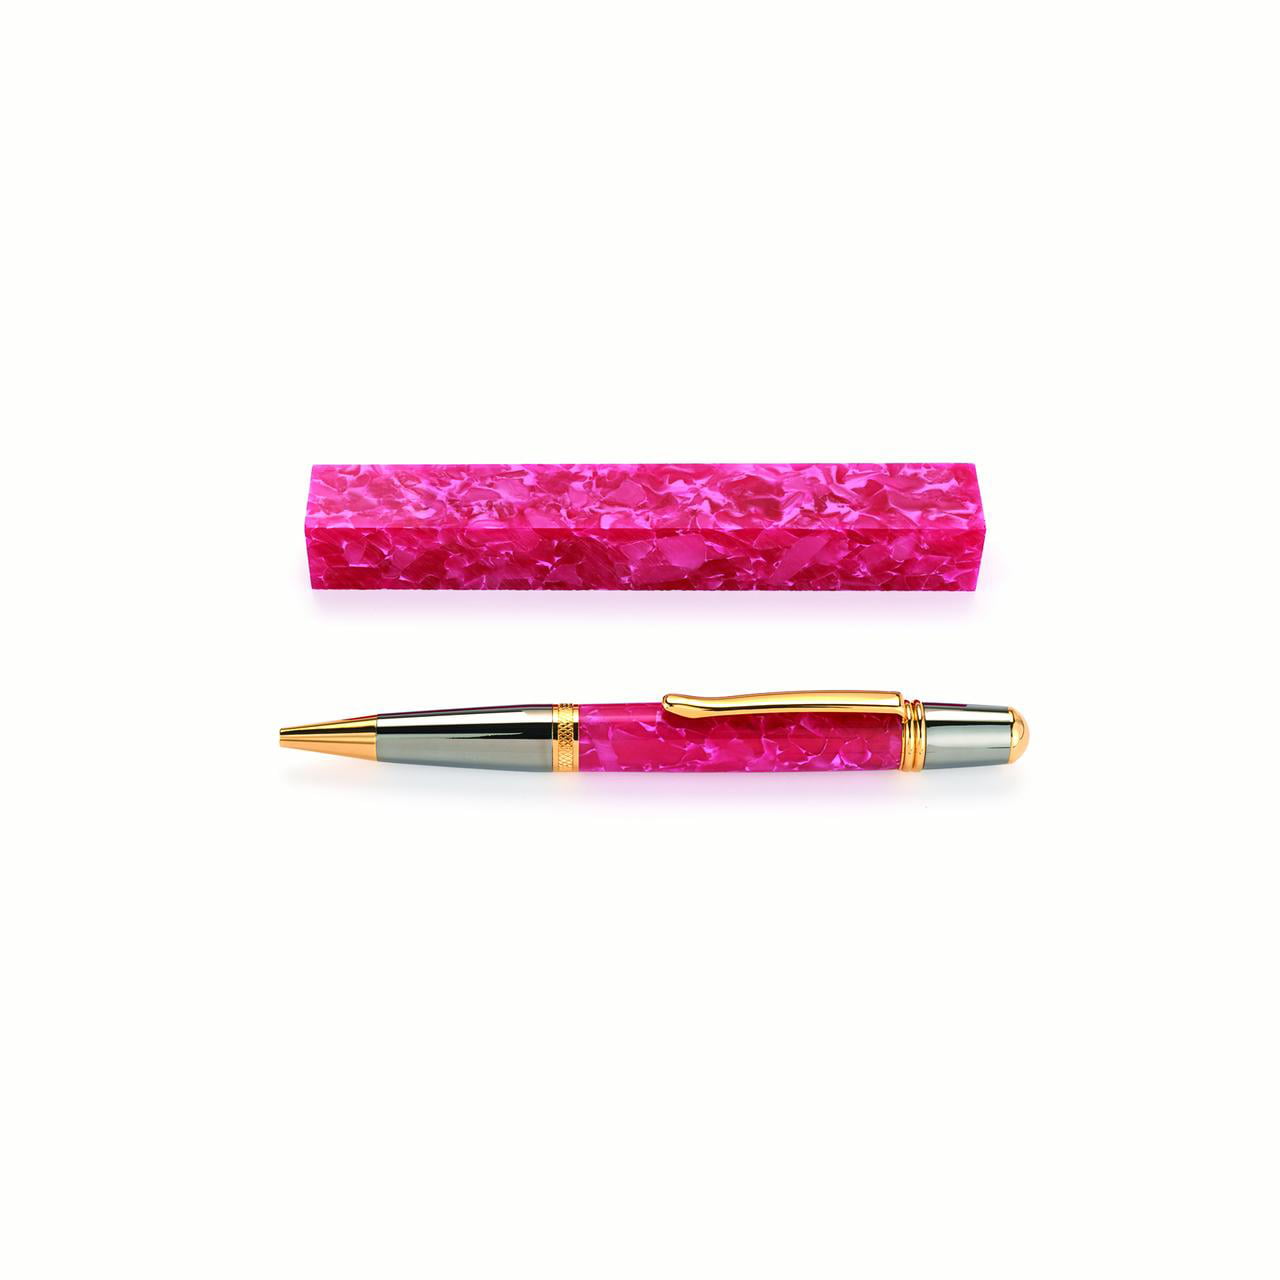 WoodRiver Pink Quartz Acrylic Pen Blank - Walmart.com - Walmart.com How To Get Pen Out Of Quartz